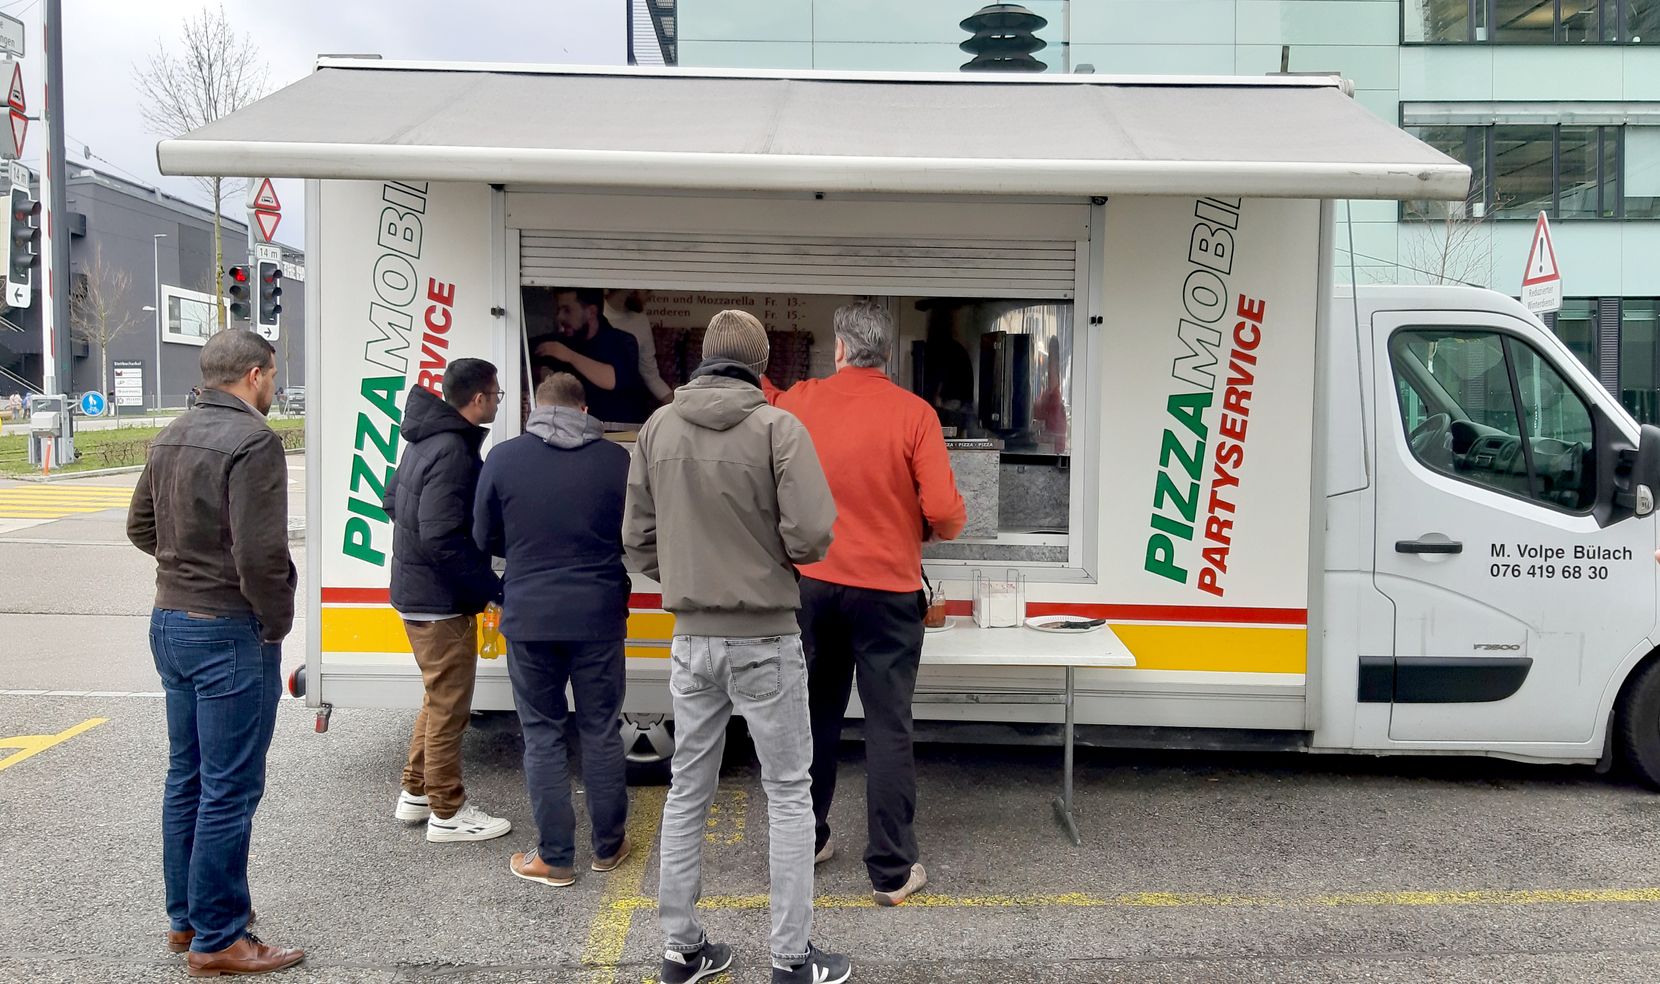 Ein Pizzamobil im Industriequartier, davor eine wartende Menschenmenge.